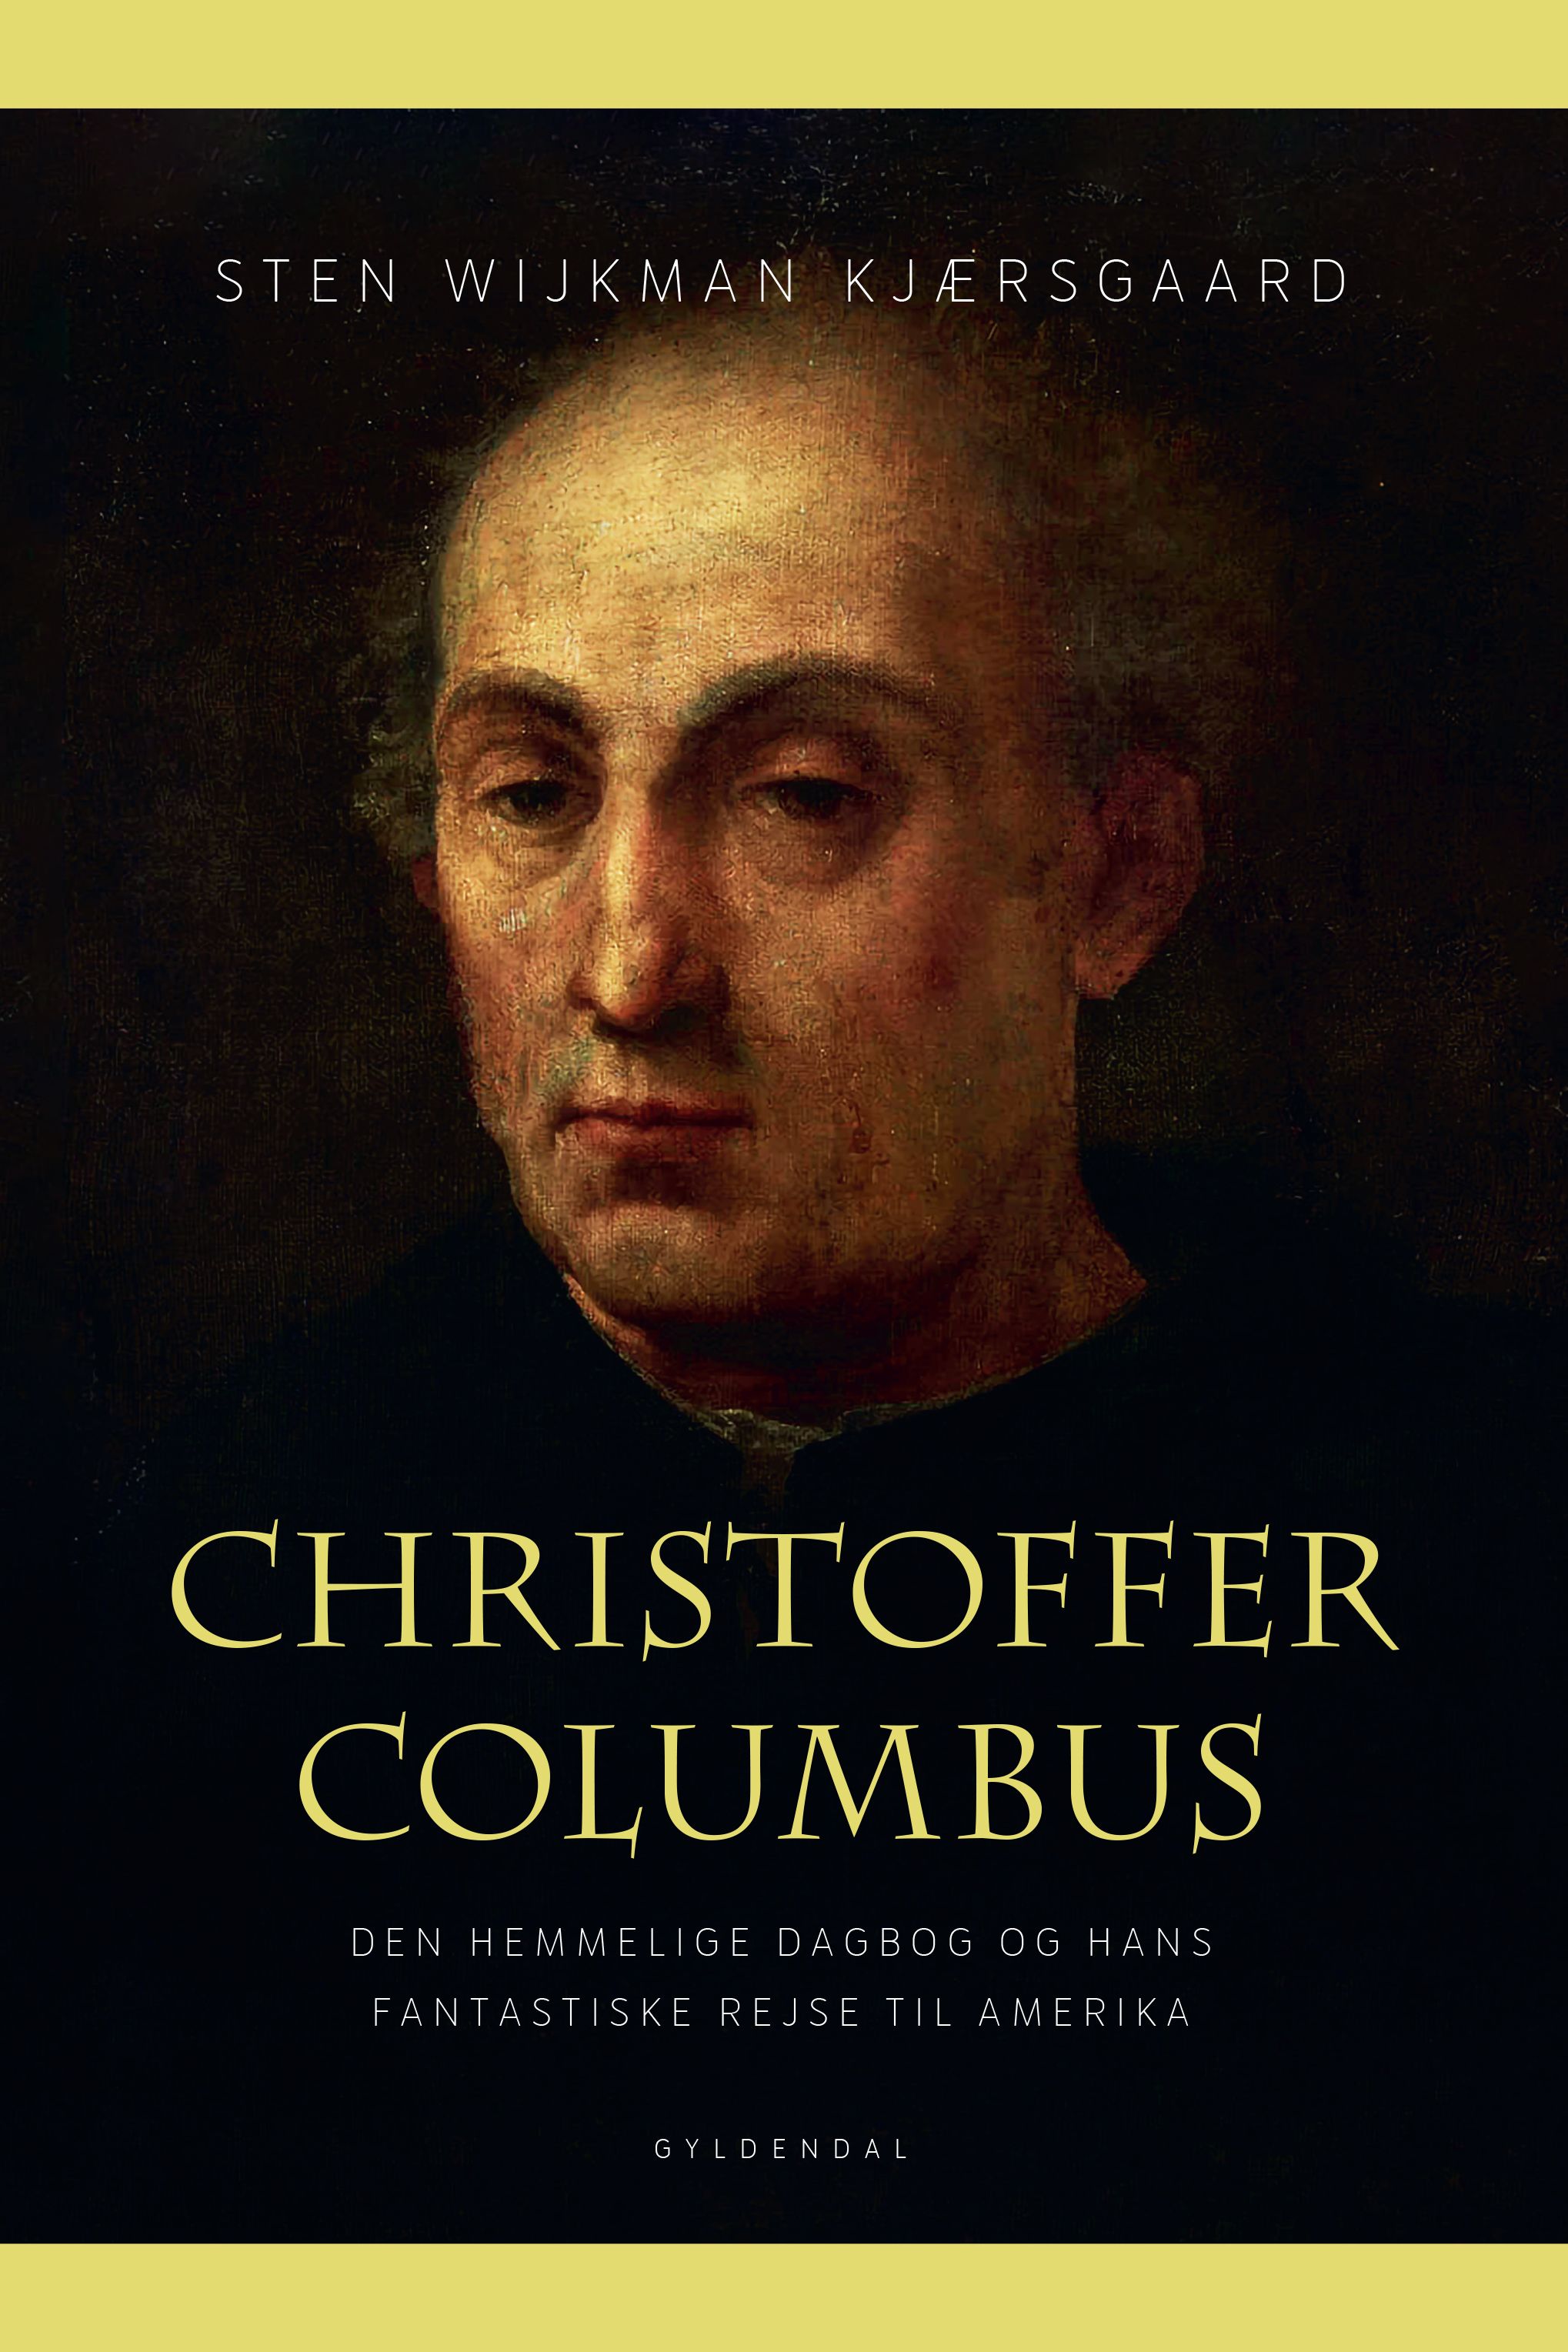 Christoffer Columbus, e-bok av Sten Wijkman Kjærsgaard